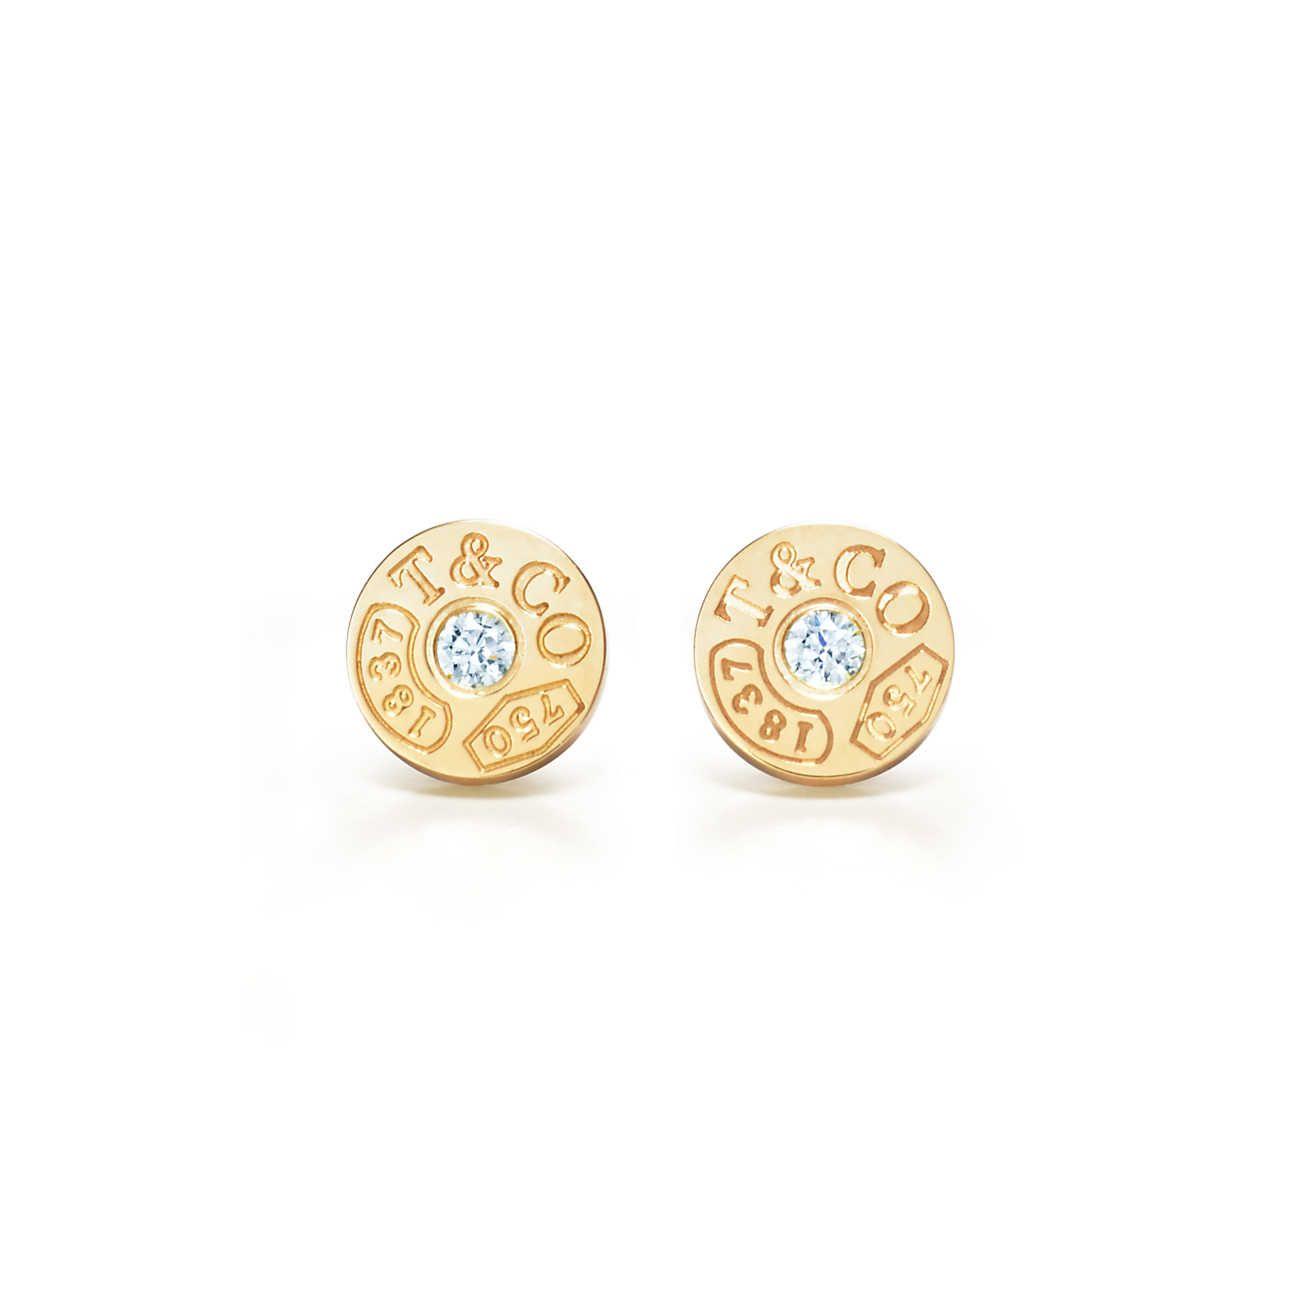 Tiffany Diamonds Logo - Tiffany 1837™ circle earrings in 18k gold with diamonds. Tiffany & Co